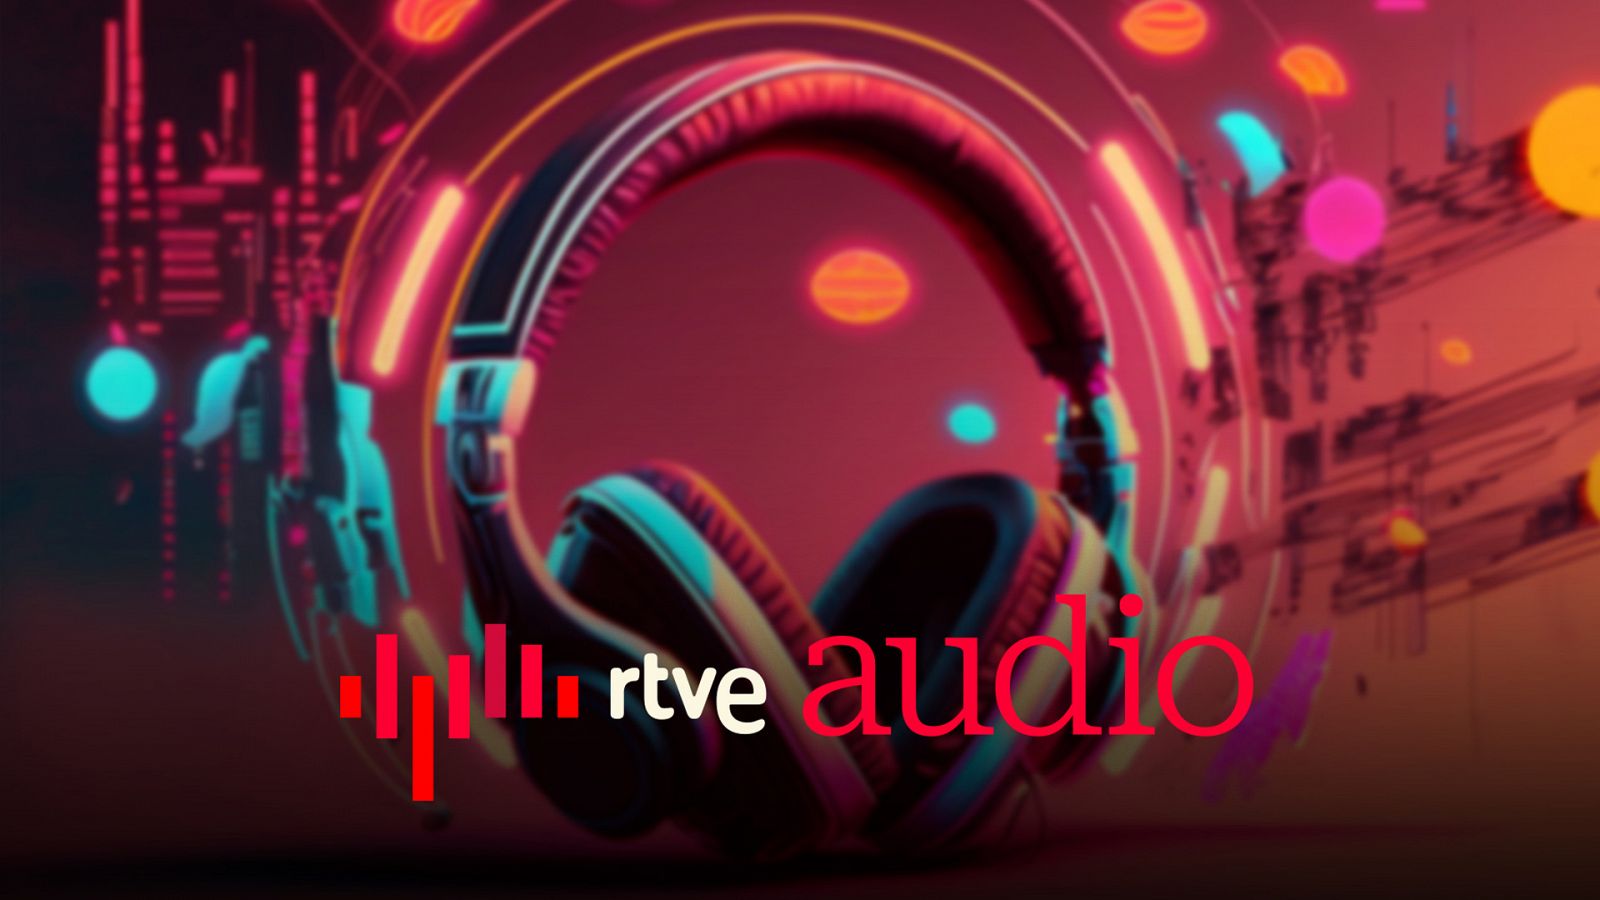 A media mañana - RTVE Audio, todo lo que suena en RTVE en una nueva app - Escuchar ahora